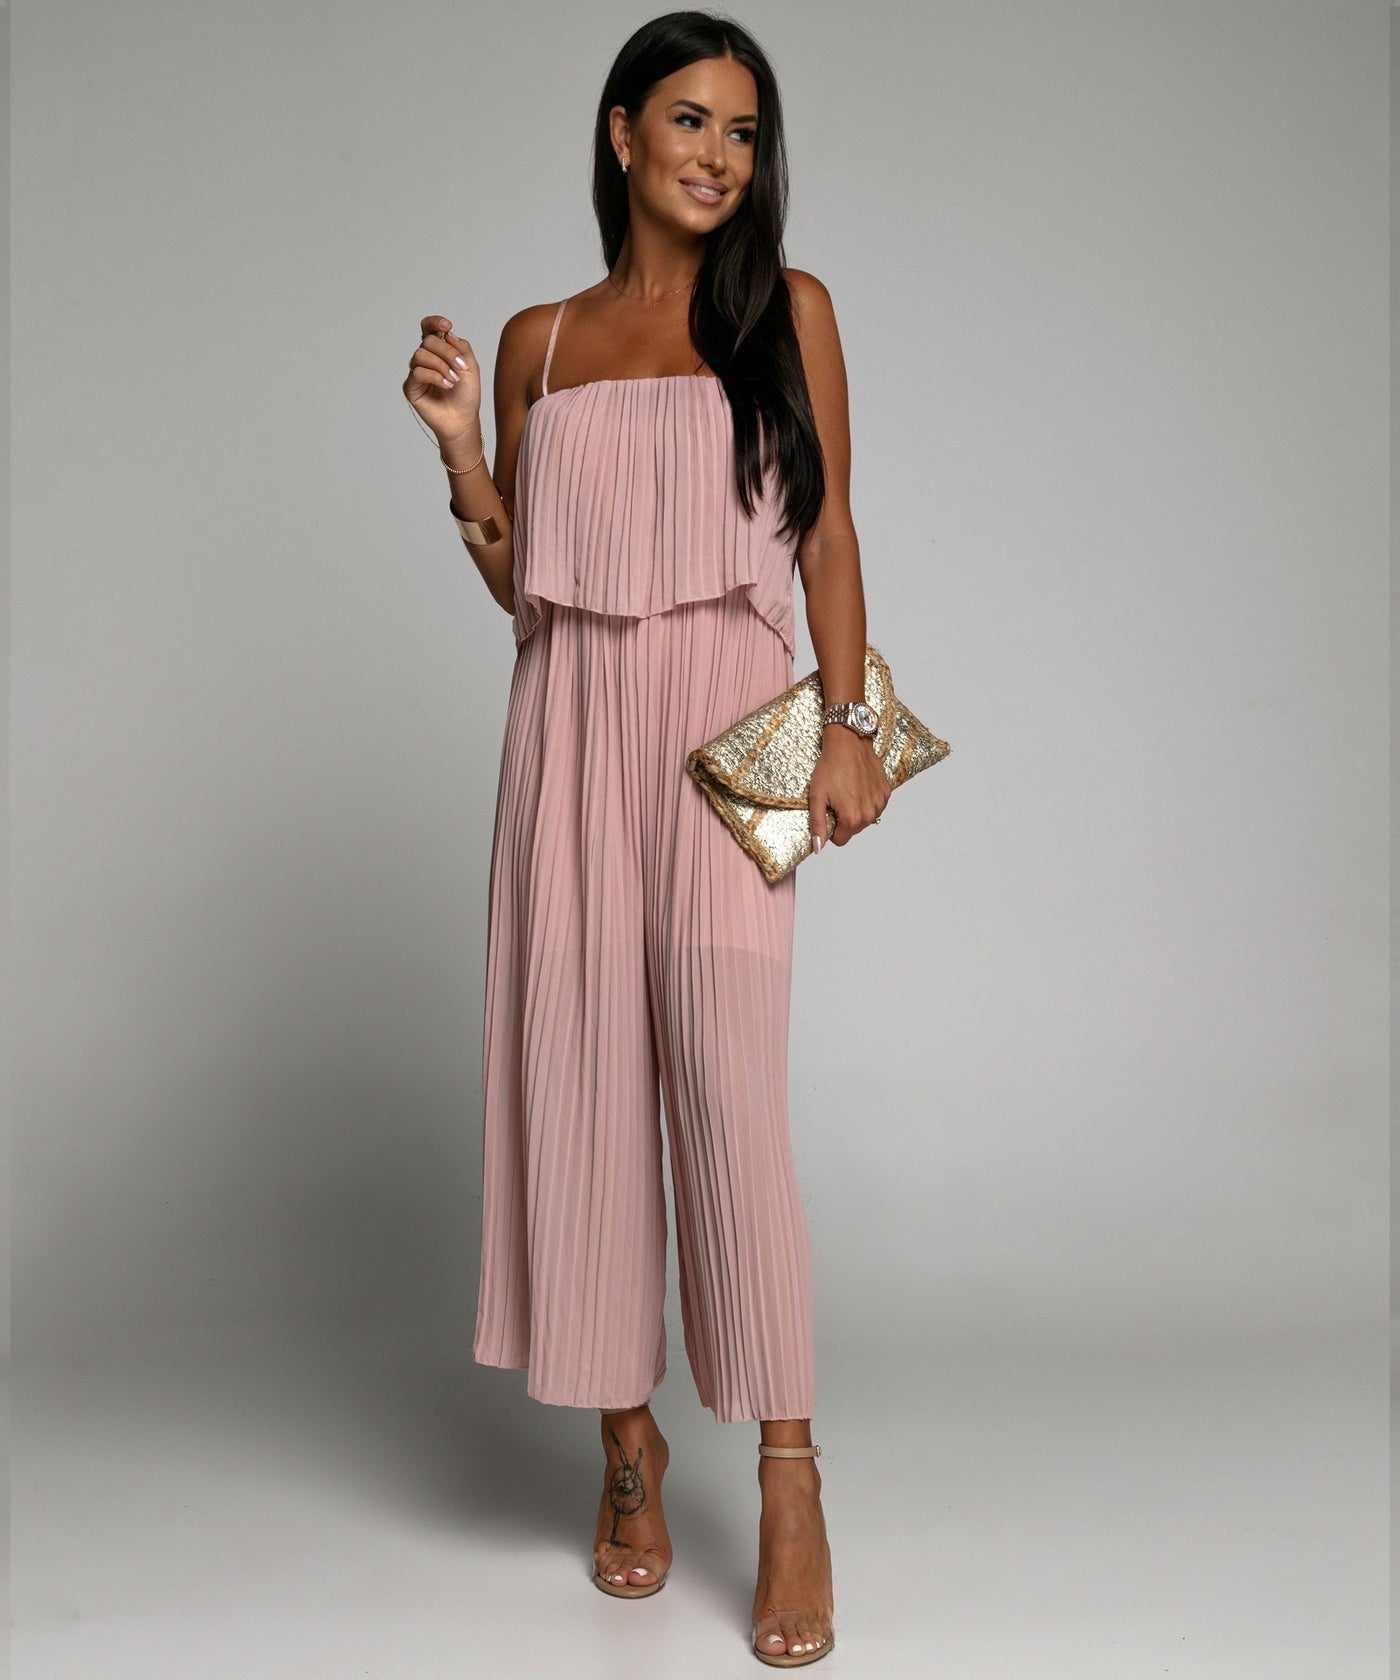 Eleganter Plissee Einteiler Rosa  Ladypolitan - Fashion Onlineshop für Damen   